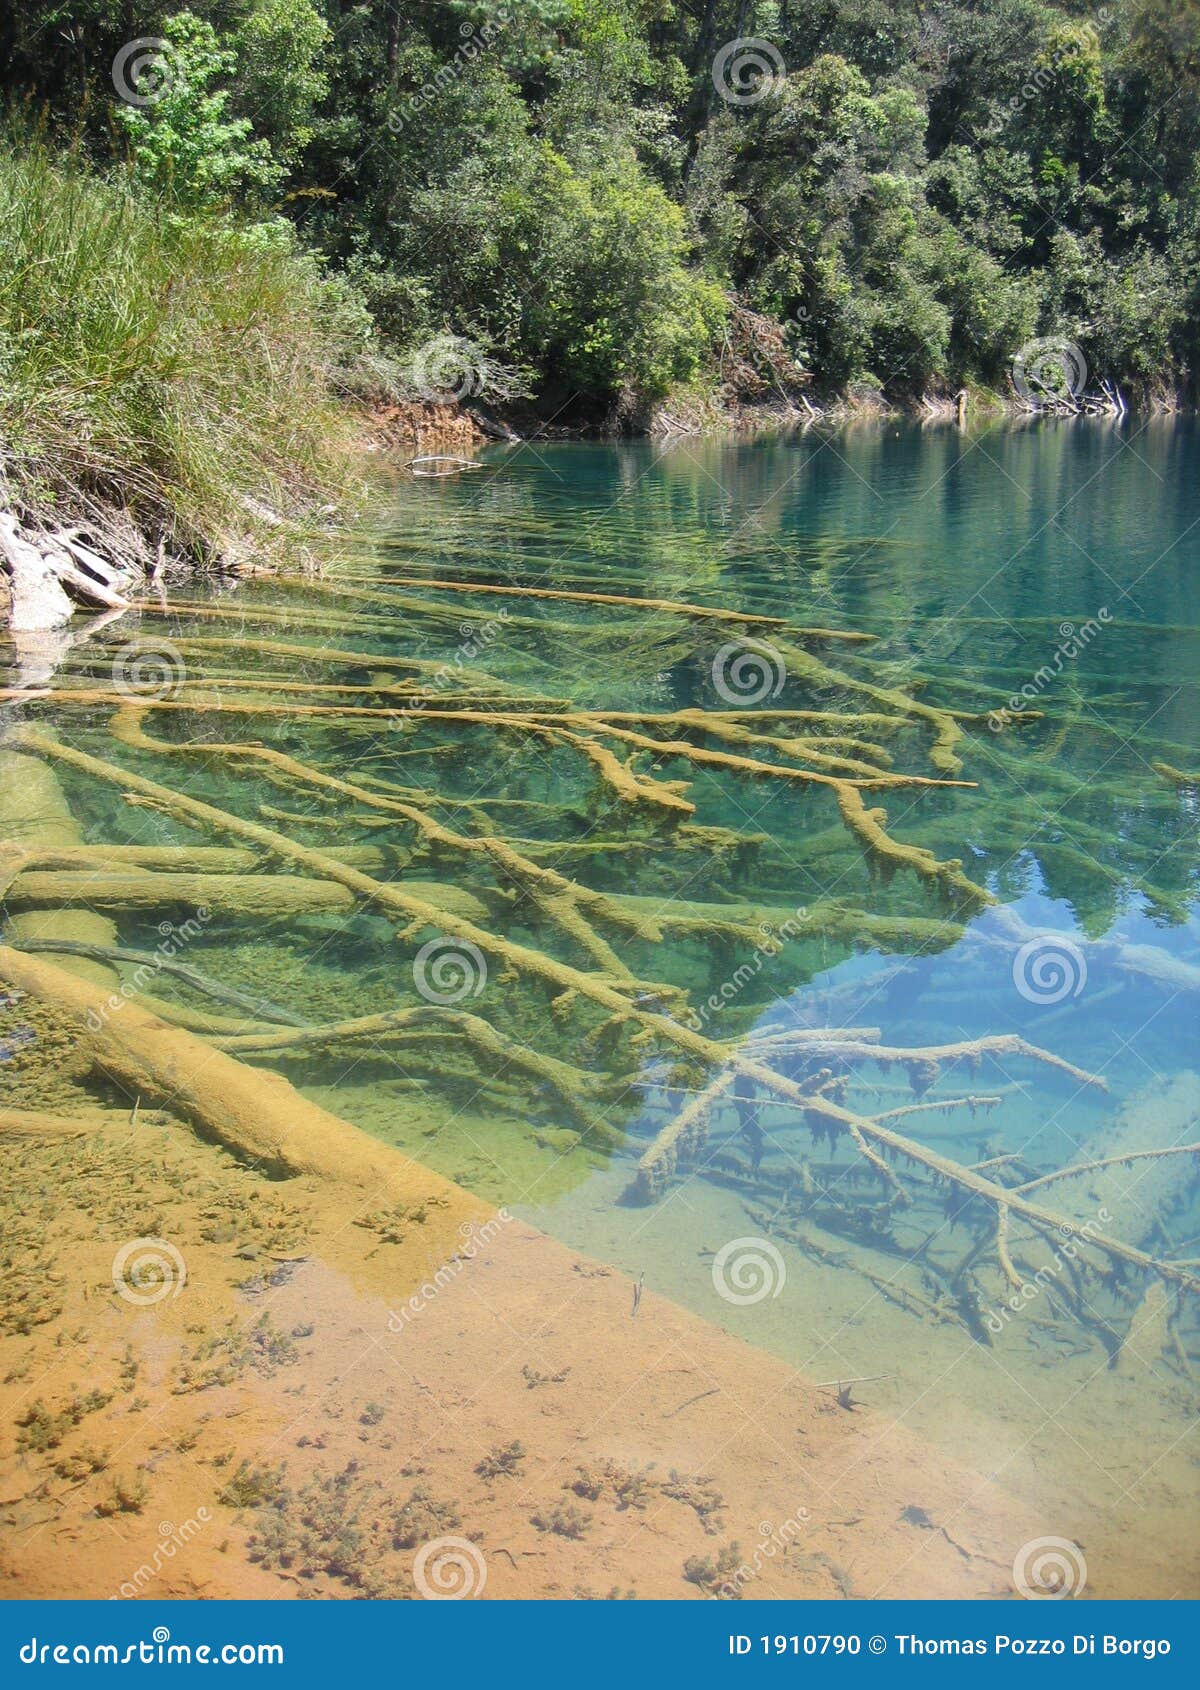 agua azul - lagunas de montebello - mexico